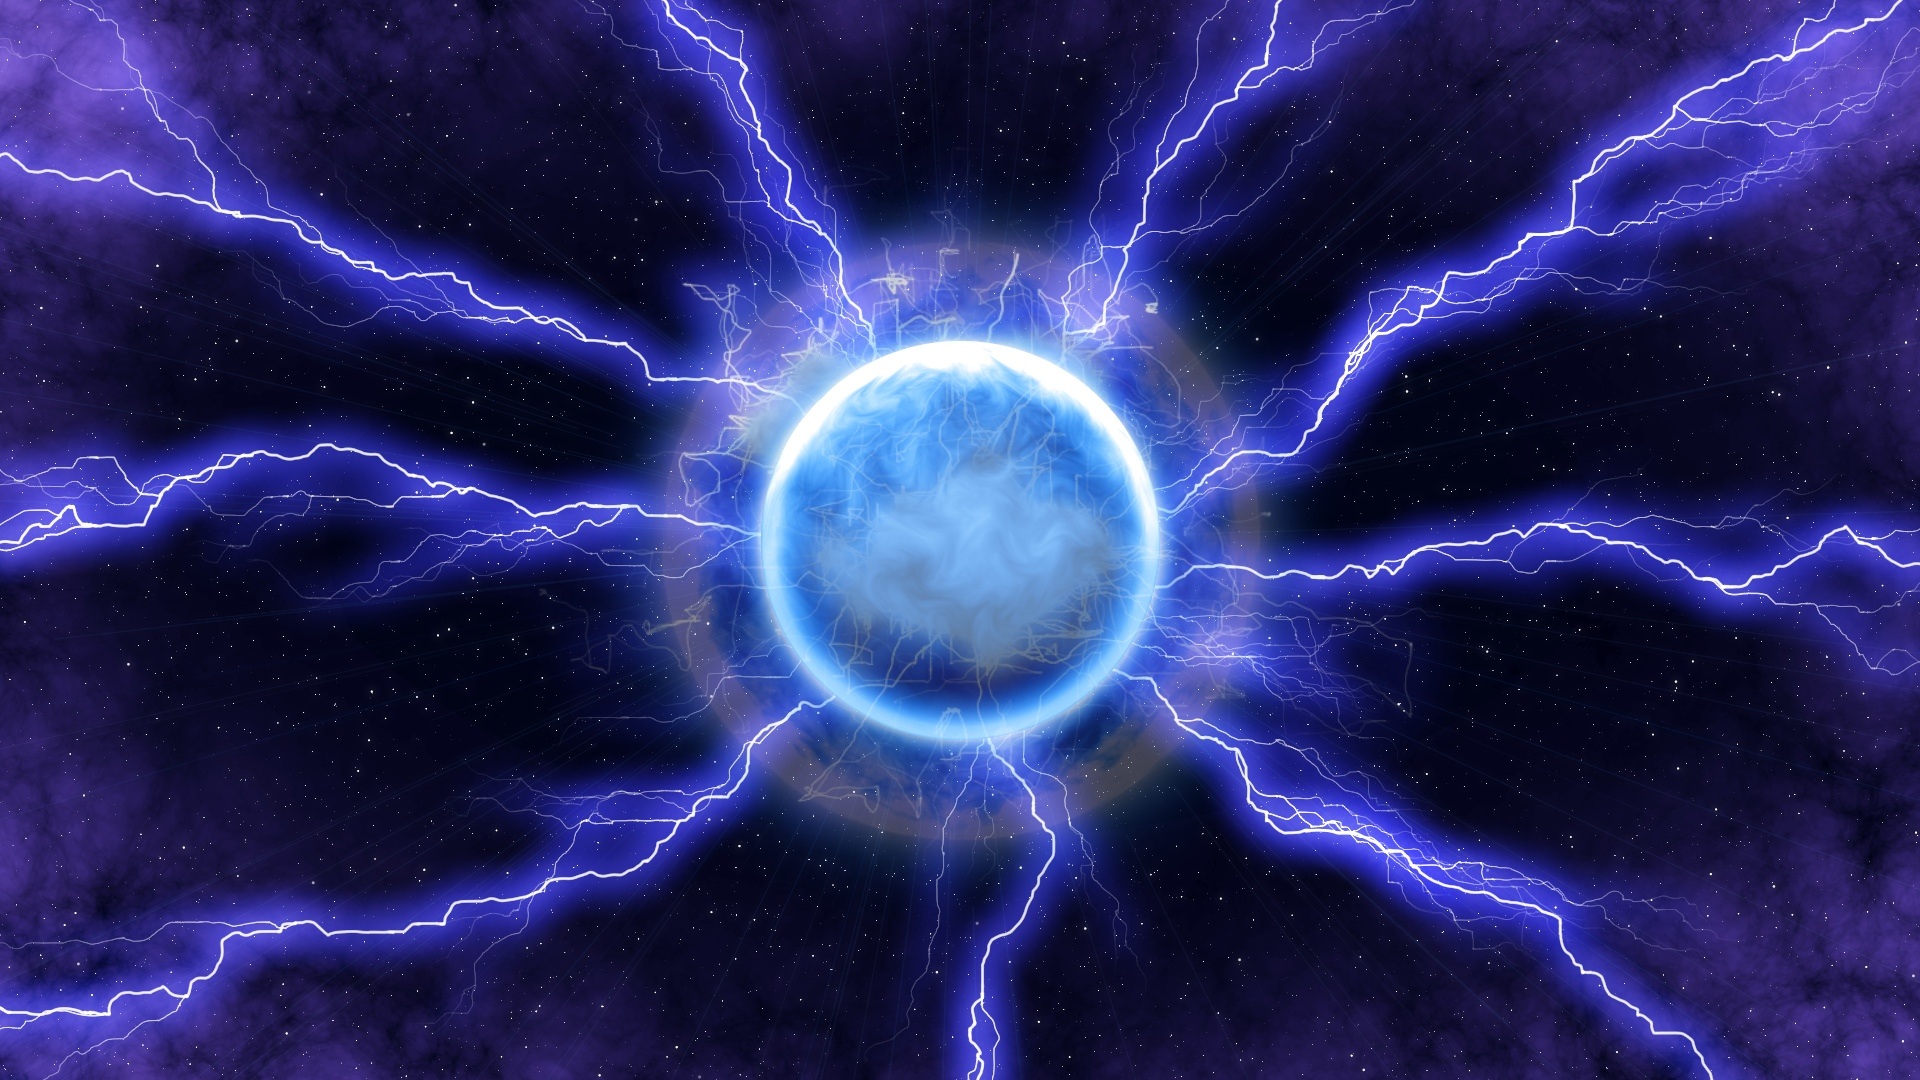 Lightning energy blue drawing free image